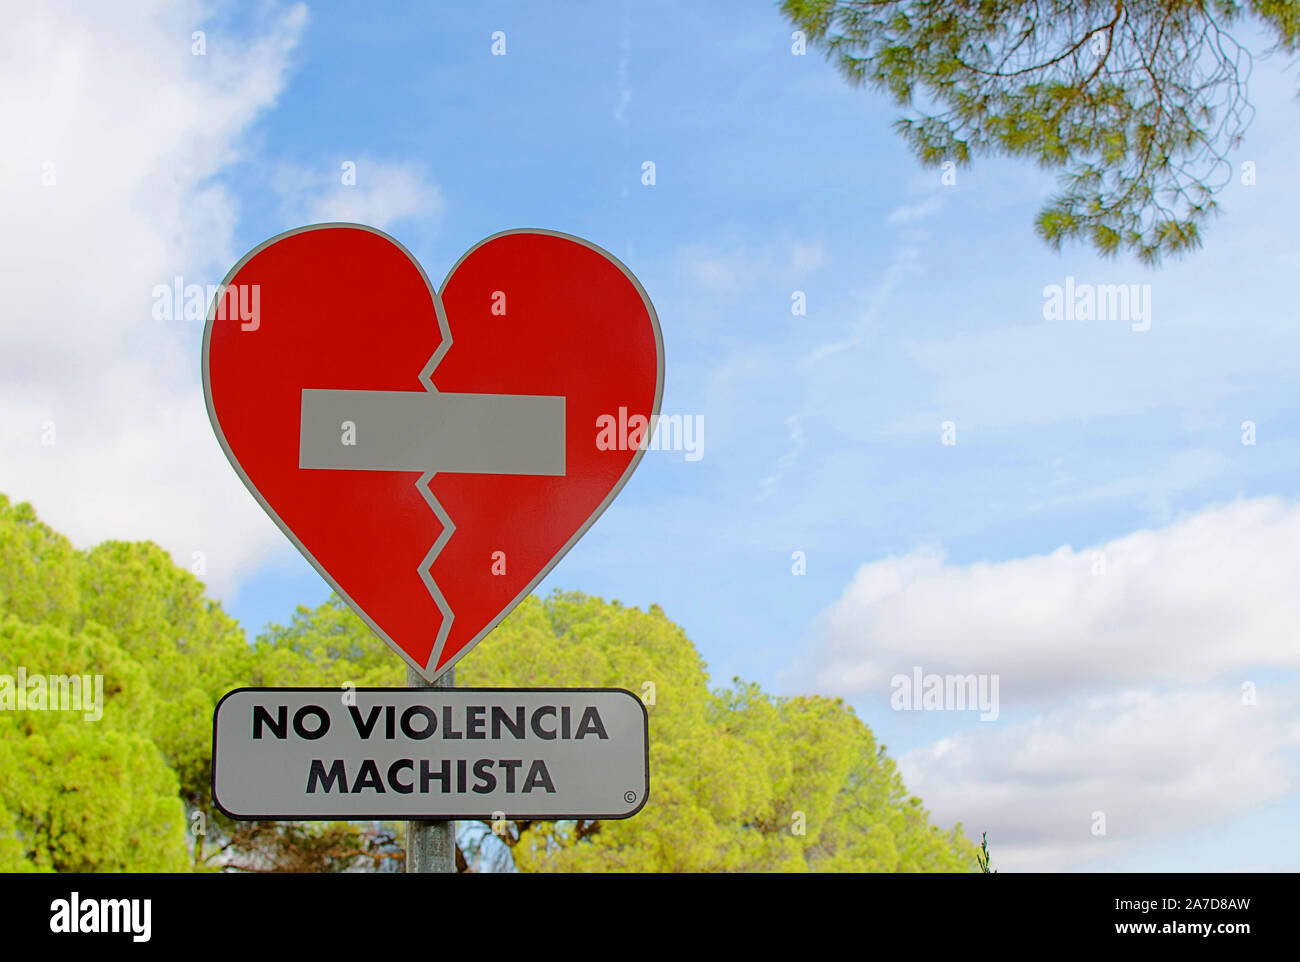 Señal de tráfico en forma de corazón "No violencia machista' en español ('No violencia masculina contra la mujer') en el parque de Oromana Alcalá de Guadaira, Sevilla, España Foto de stock